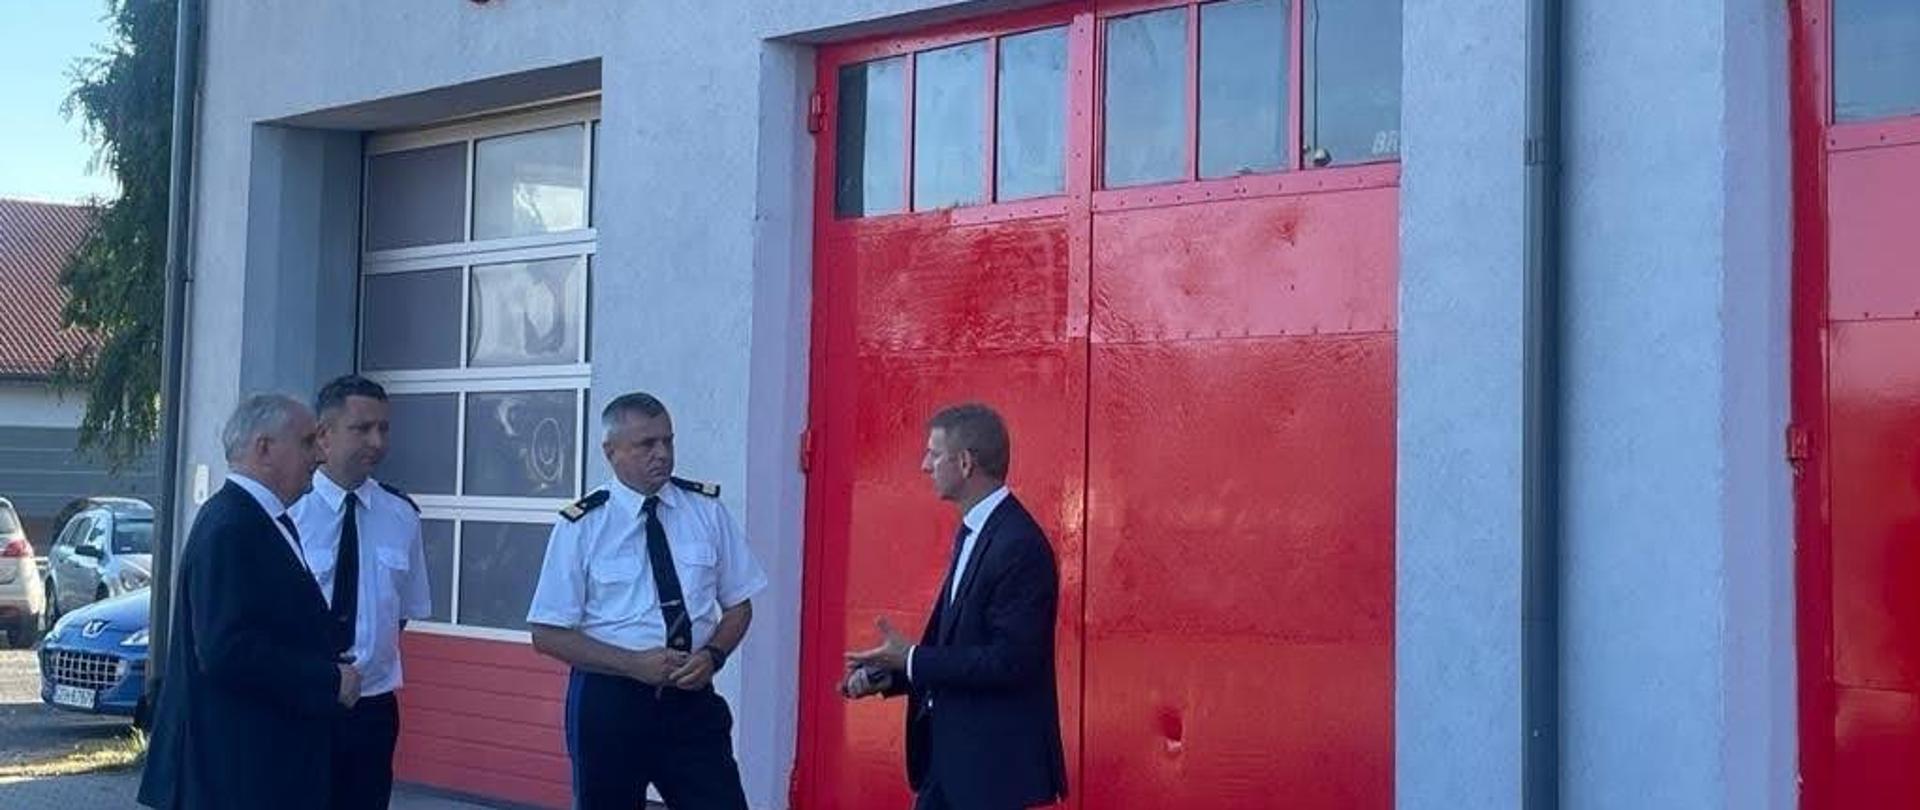 Wojewoda pomorski, funkcjonariusze Państwowej Straży Pożarnej oraz przedstawiciel władz gminy stoją przed czerwoną bramą garażową na ścianie jest napis dom strażaka w Brusach. 